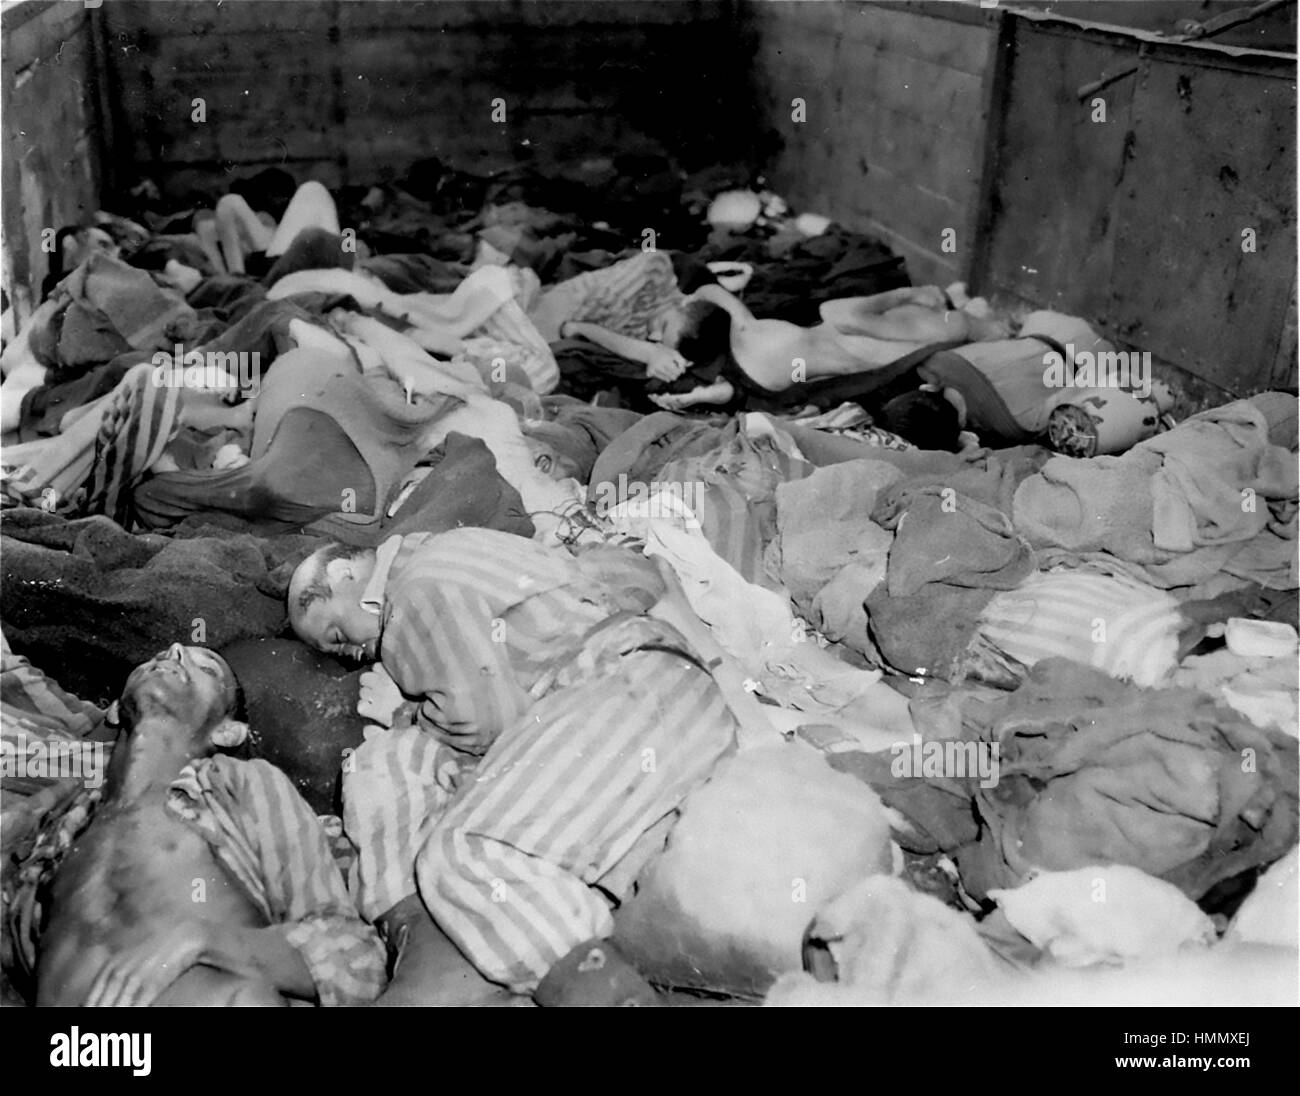 CAMP DE CONCENTRATION DE DACHAU des cadavres dans l'un des près de 40 wagons contenant les corps d'entre 2 000 à 3 000 prisonniers qui ont été évacués de Buchenwald le 7 avril 1945. Le train est arrivé à Dachau le 28 avril. Photo : US Holocaust Memorial Museum. Banque D'Images